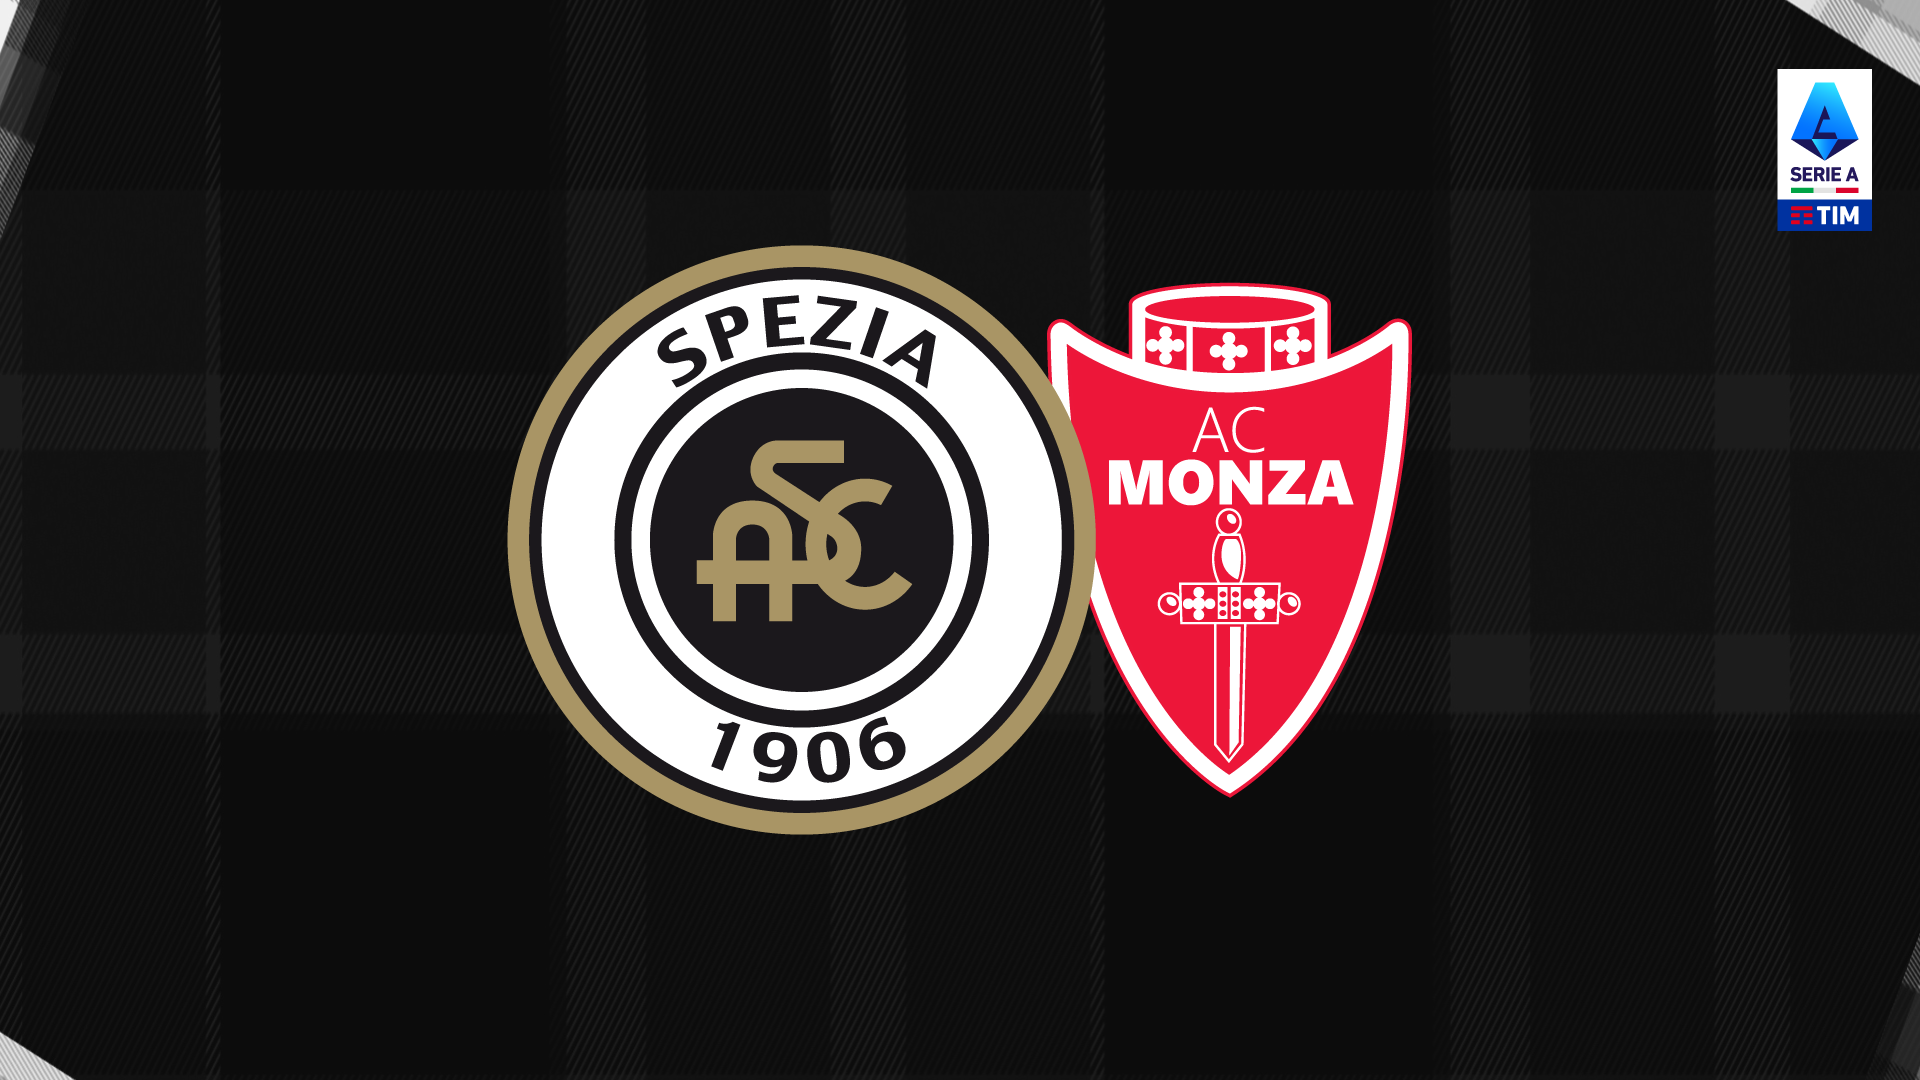 Spezia-Monza: prevendita attiva dalle 12:00 e sconti per i possessori di Eagle Card